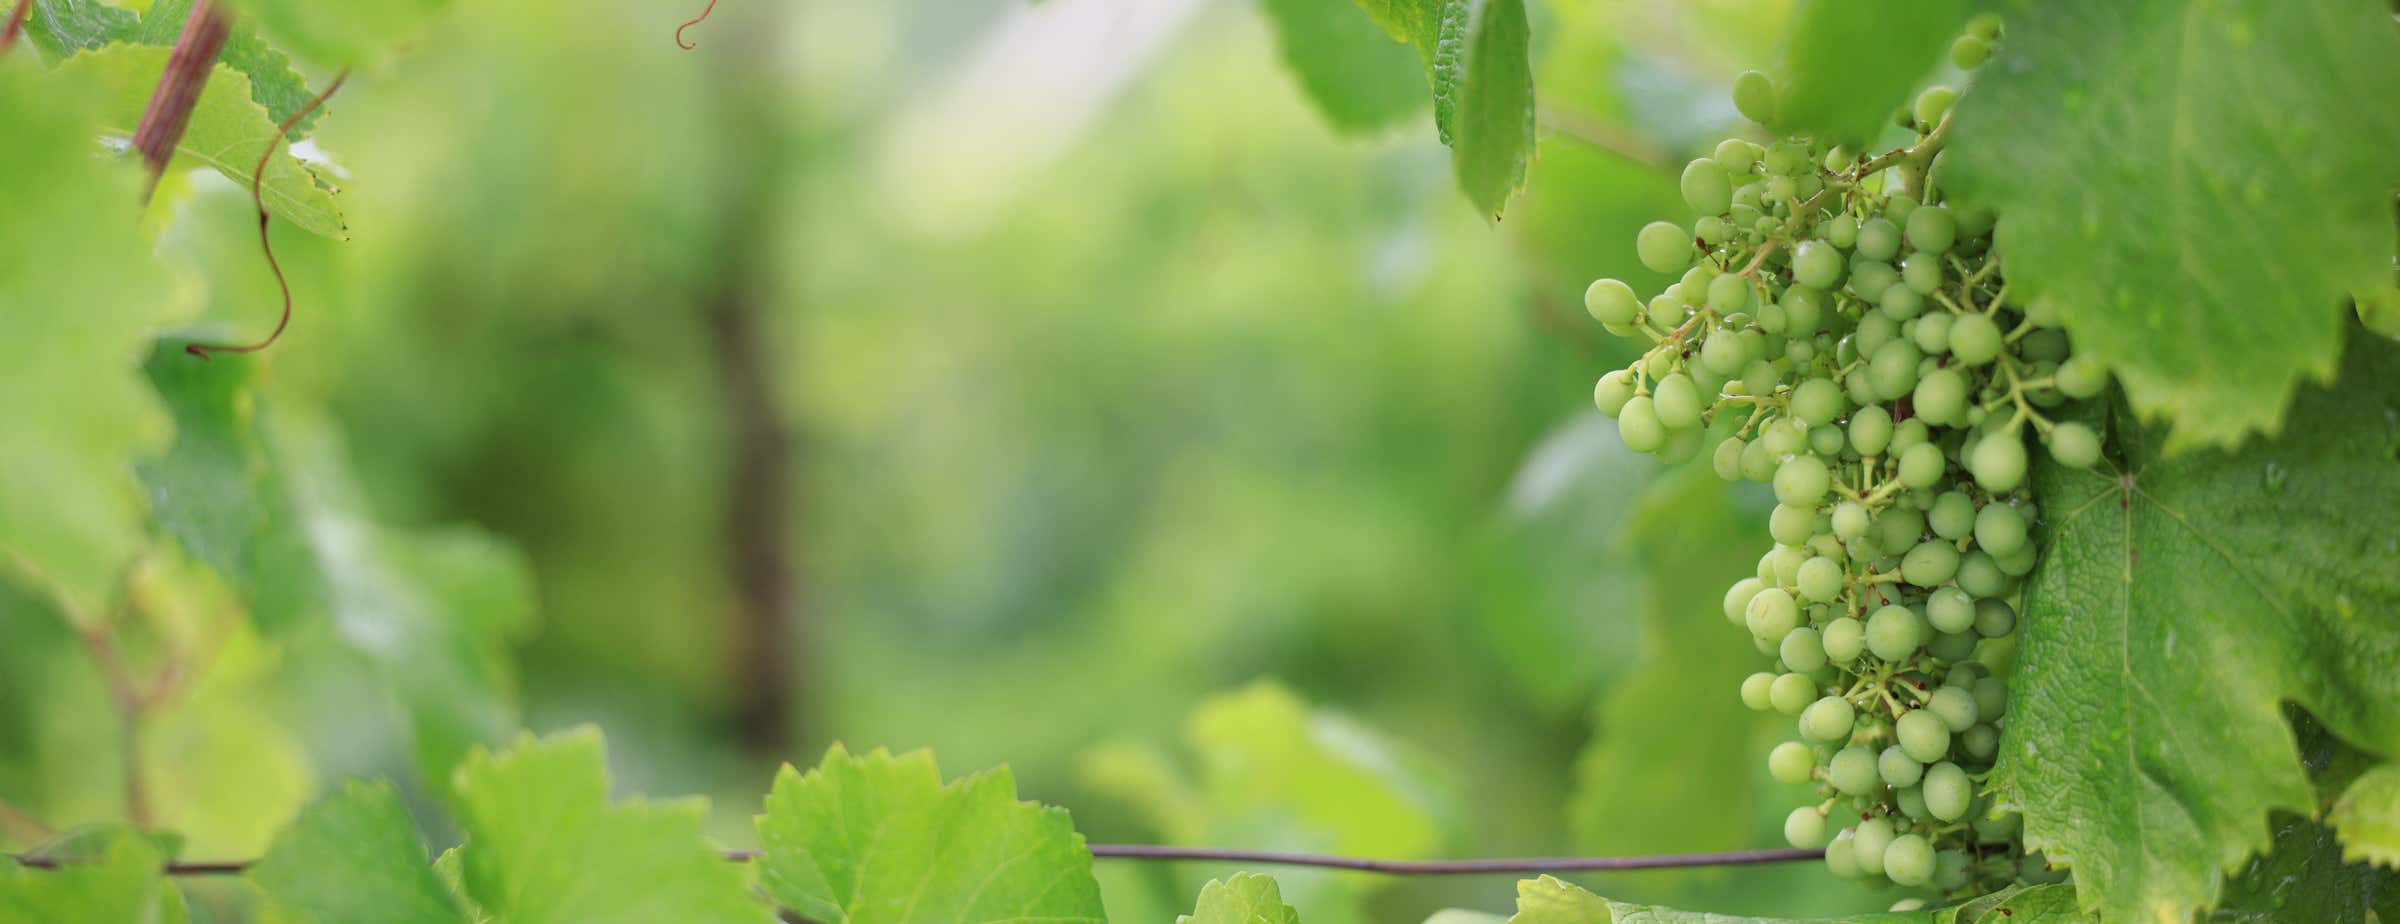 Slika zelenog grožđa koje visi u vinogradu okruženo zelenim lišćem.